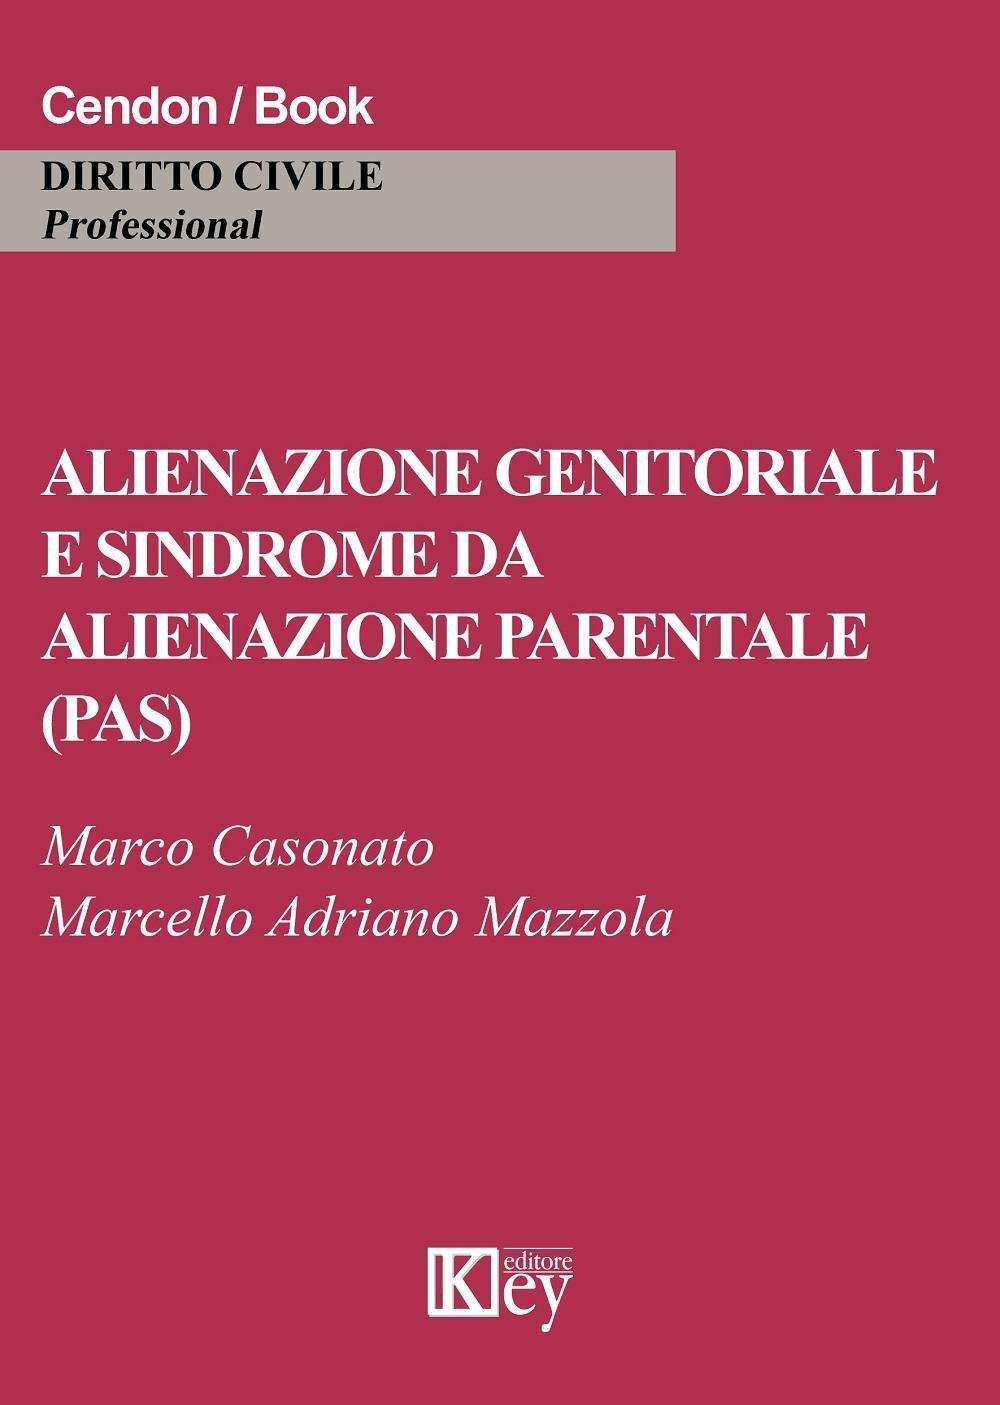 Image of Alienazione genitoriale e sindrome da alienazione parentale (PAS)